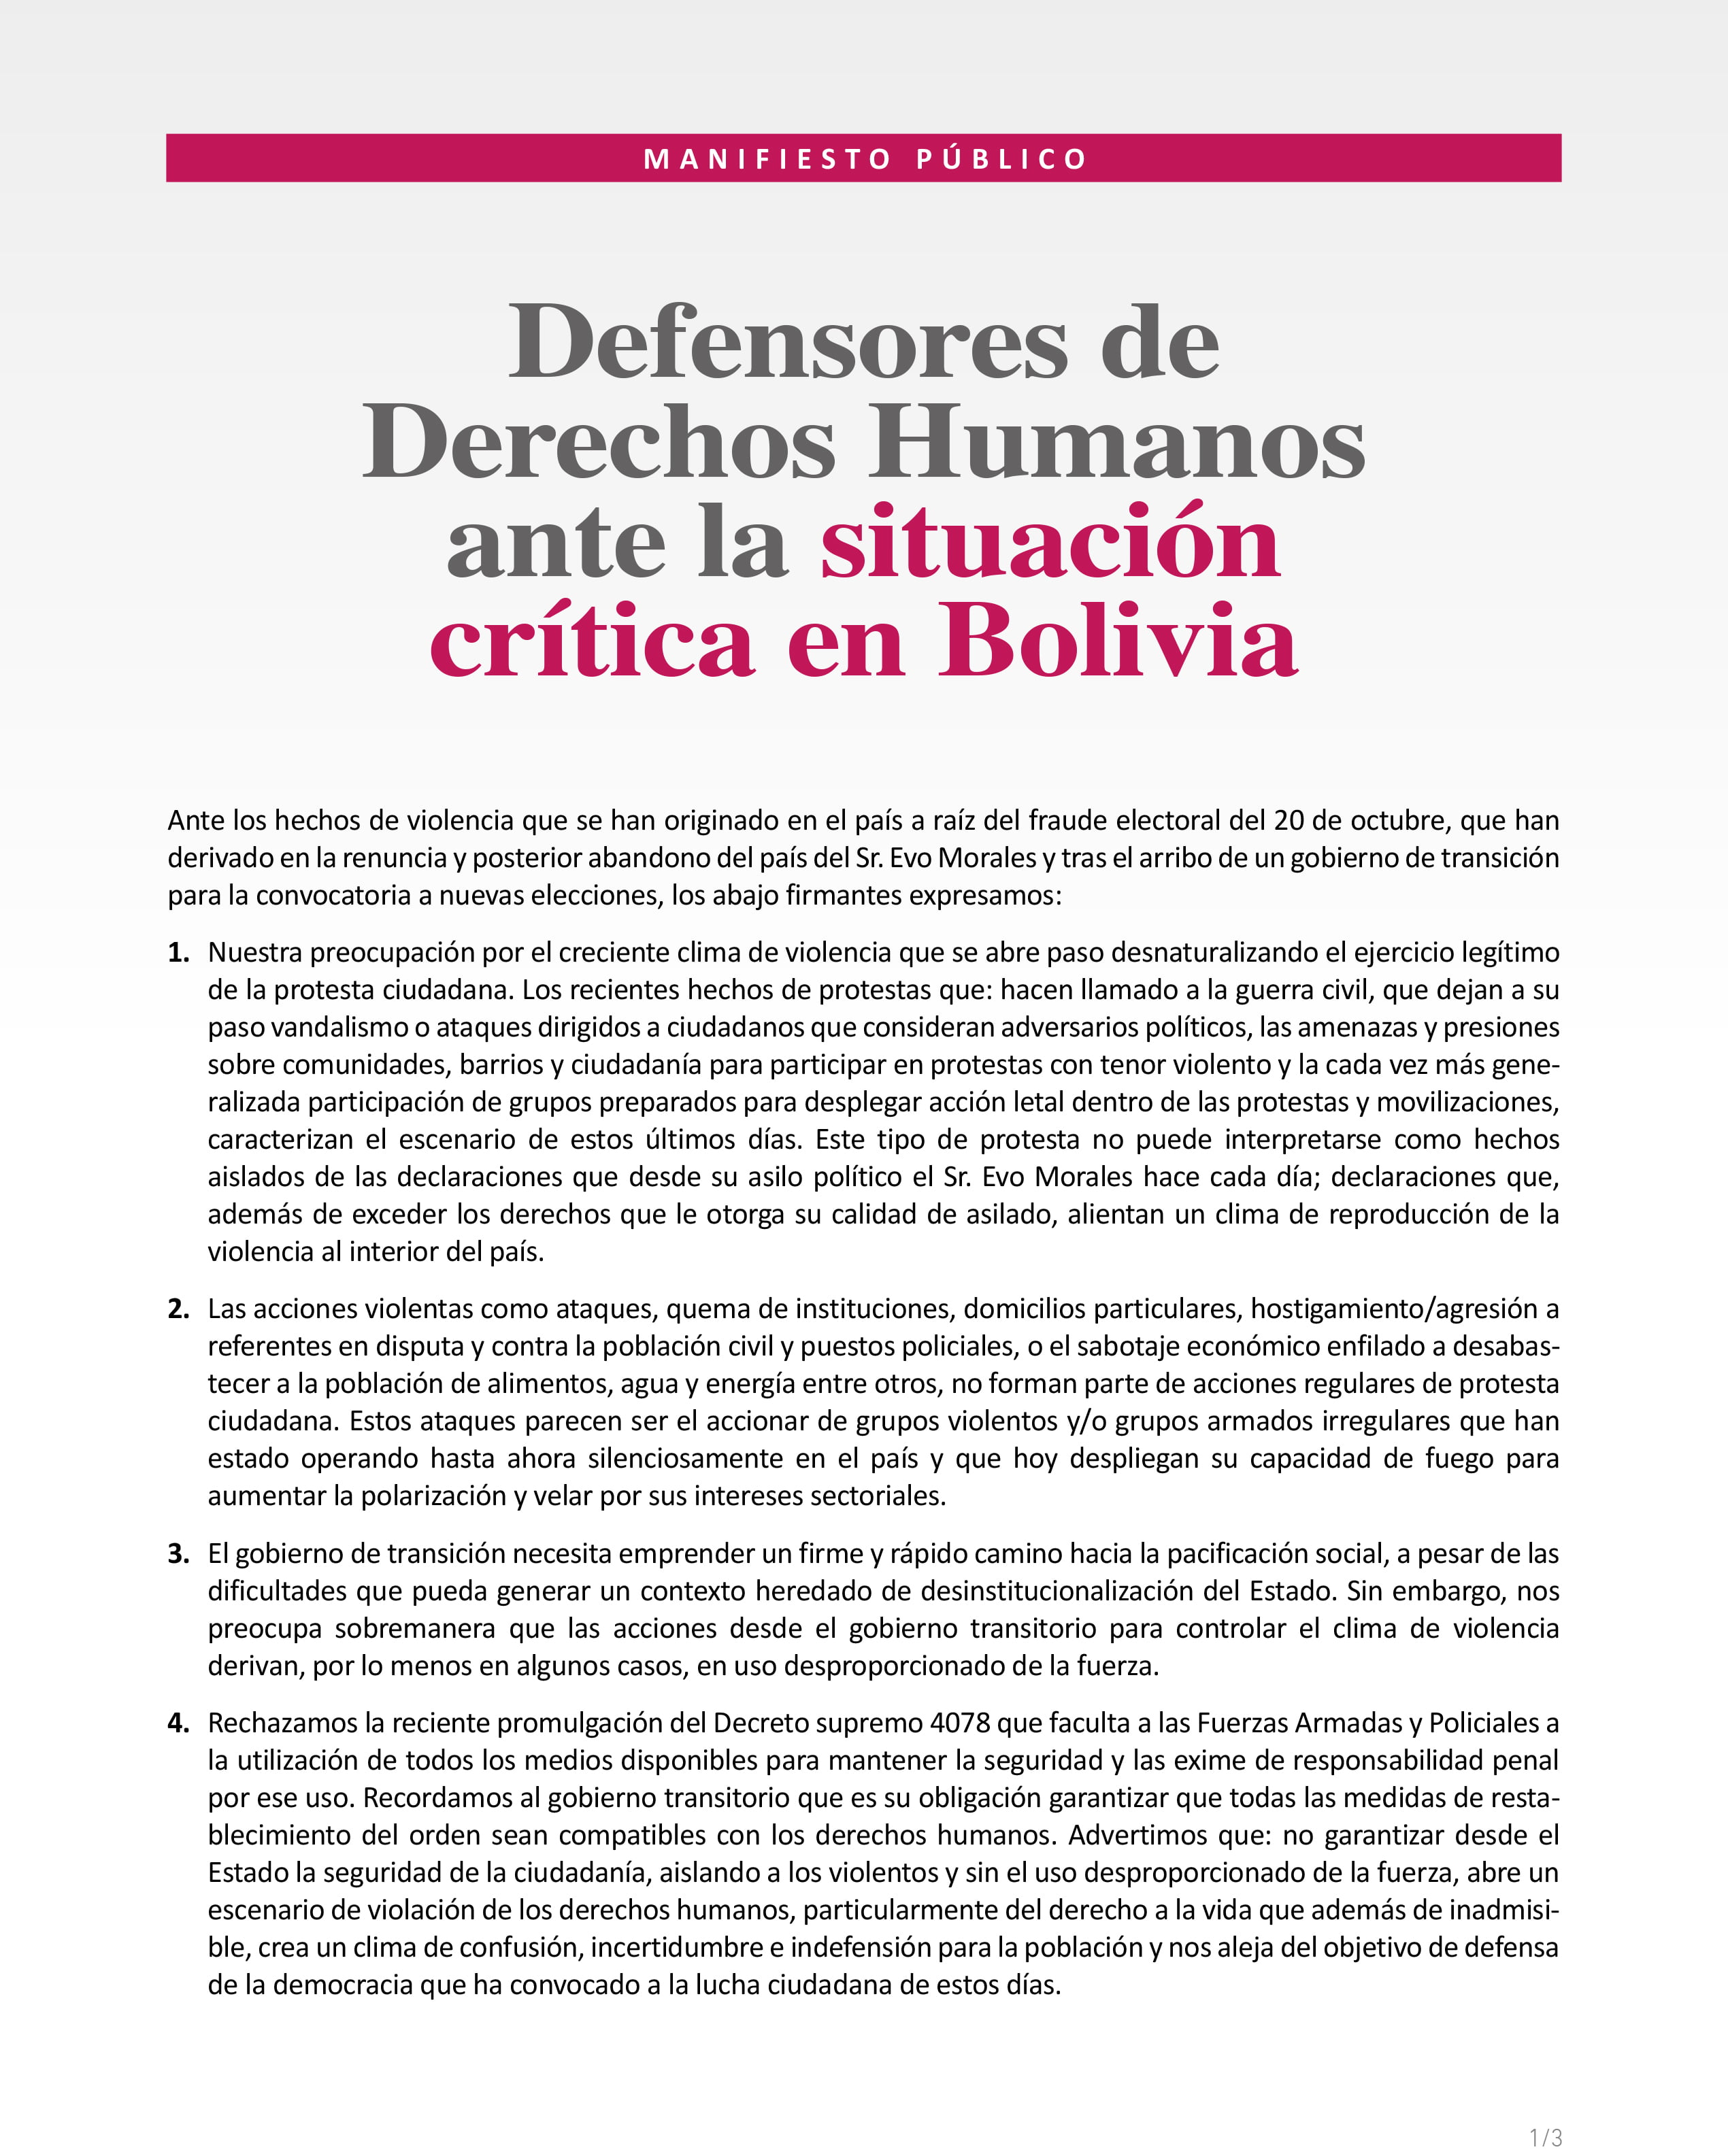 Defensores de Derechos Humanos ante la situación crítica en Bolivia (19-11-19)